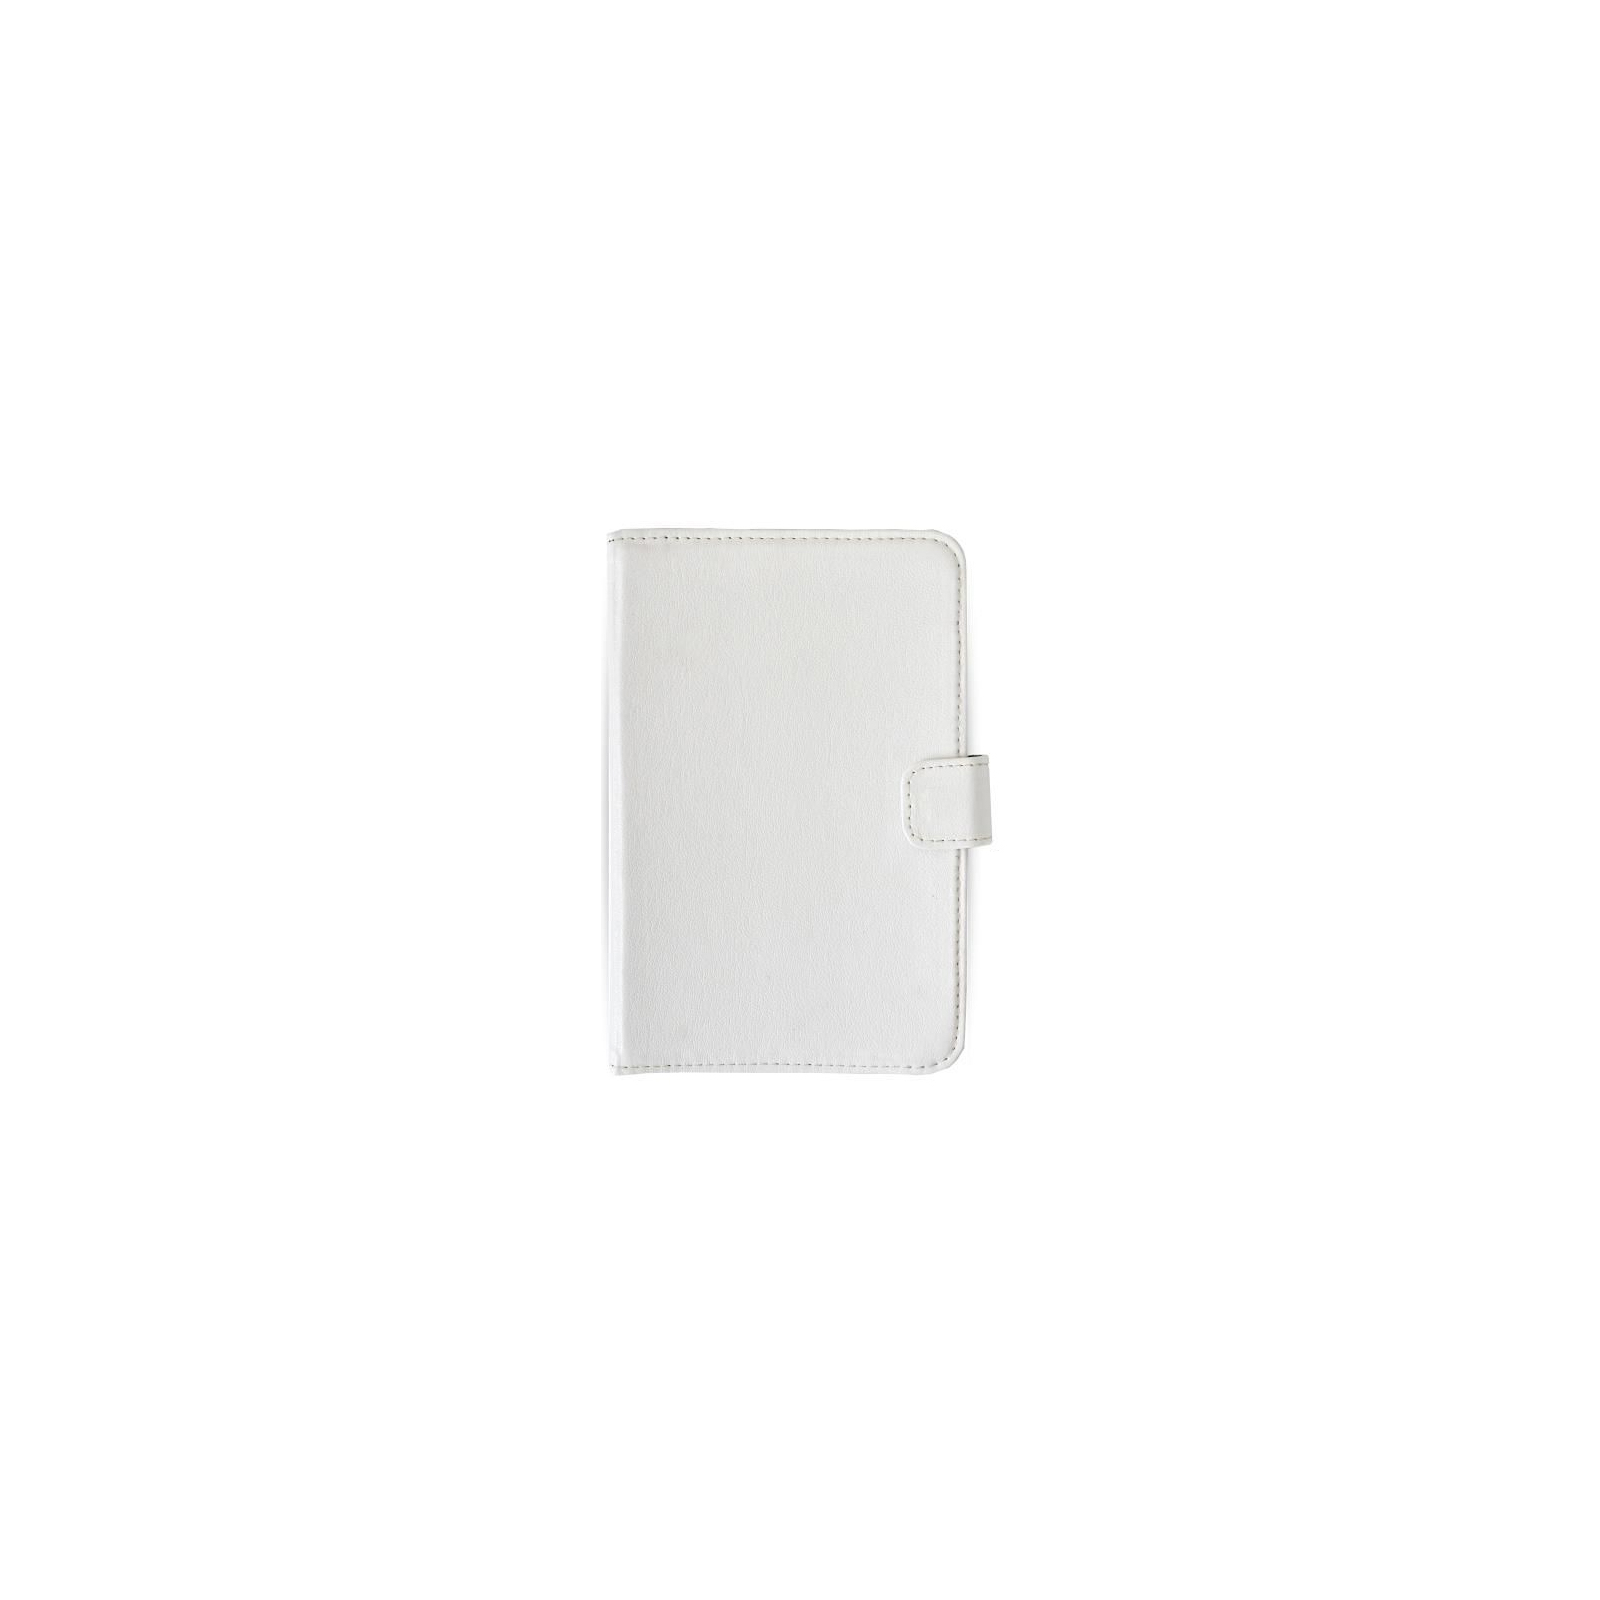 Чехол для планшета Vento 10.1 Advanced - white (101Р031W)